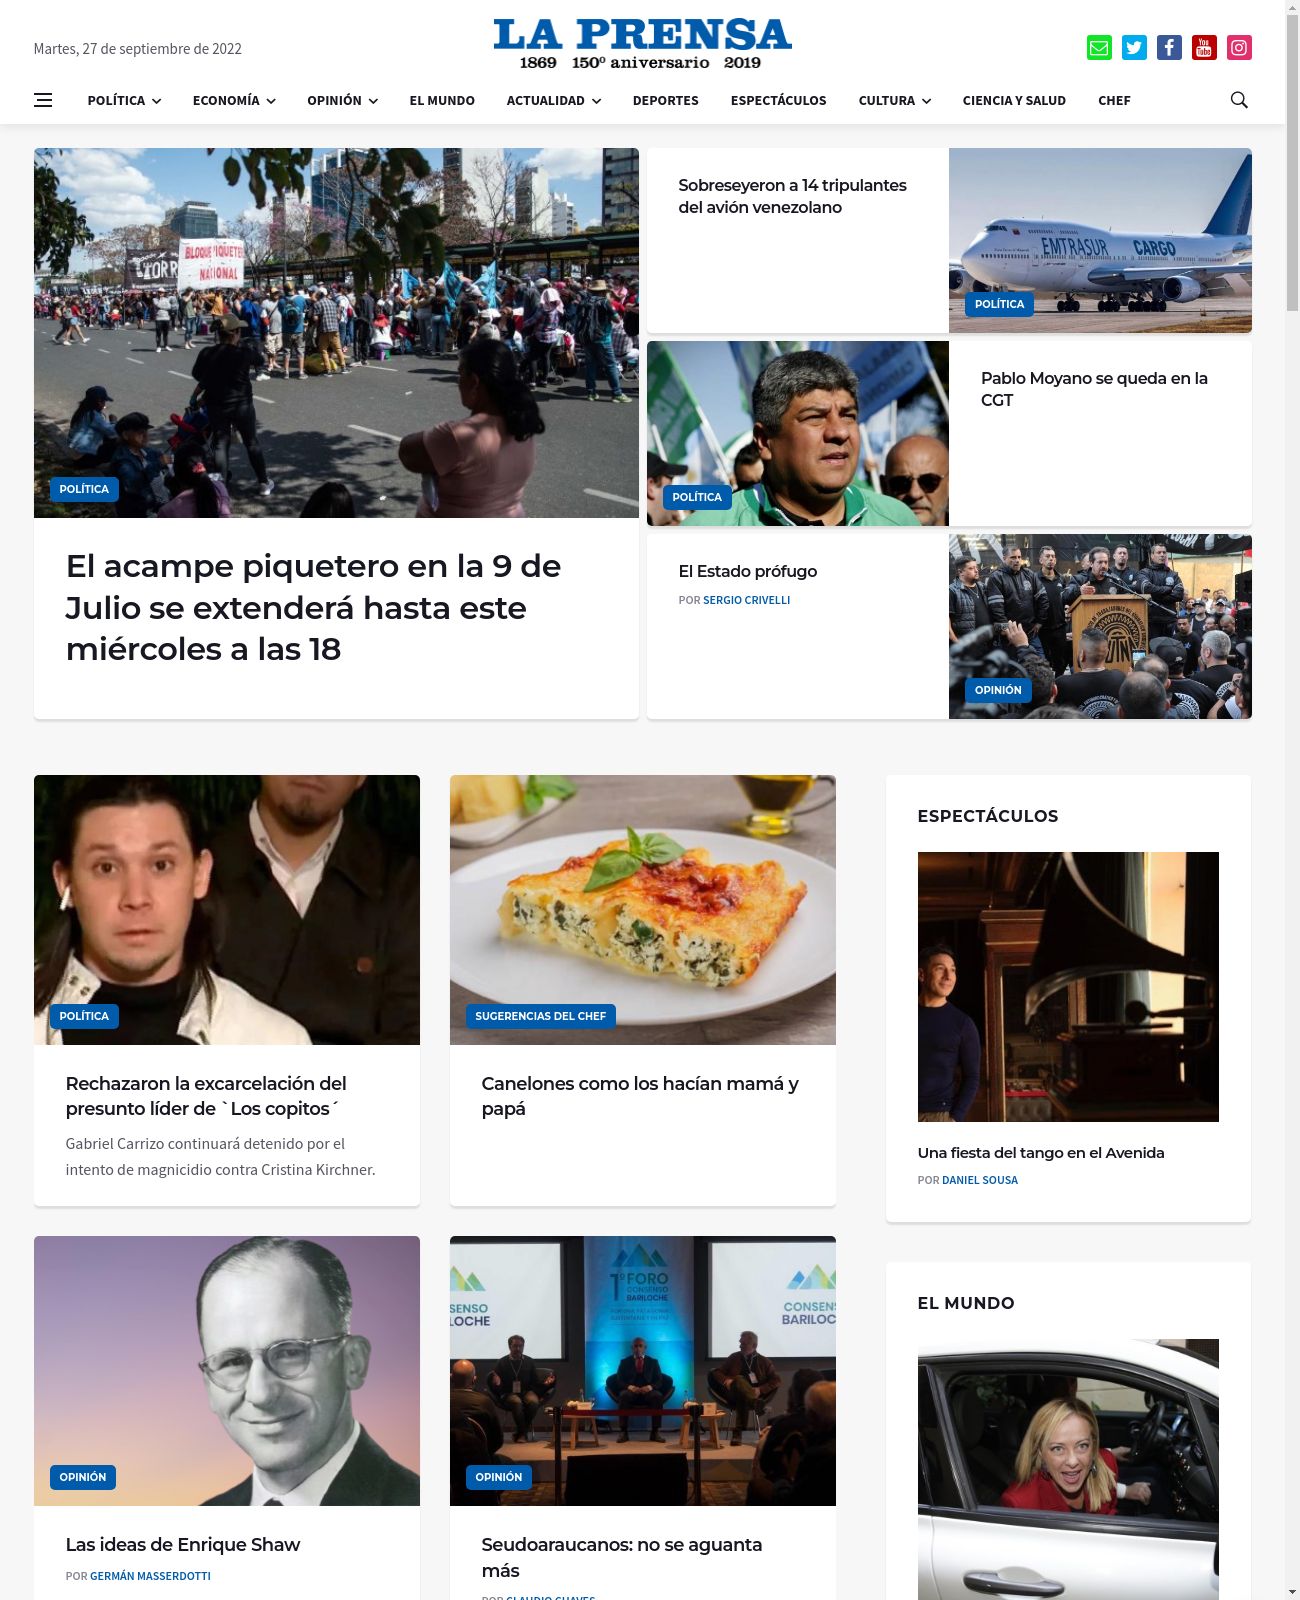 La Prensa at 2022-09-27 22:26:59-03:00 local time